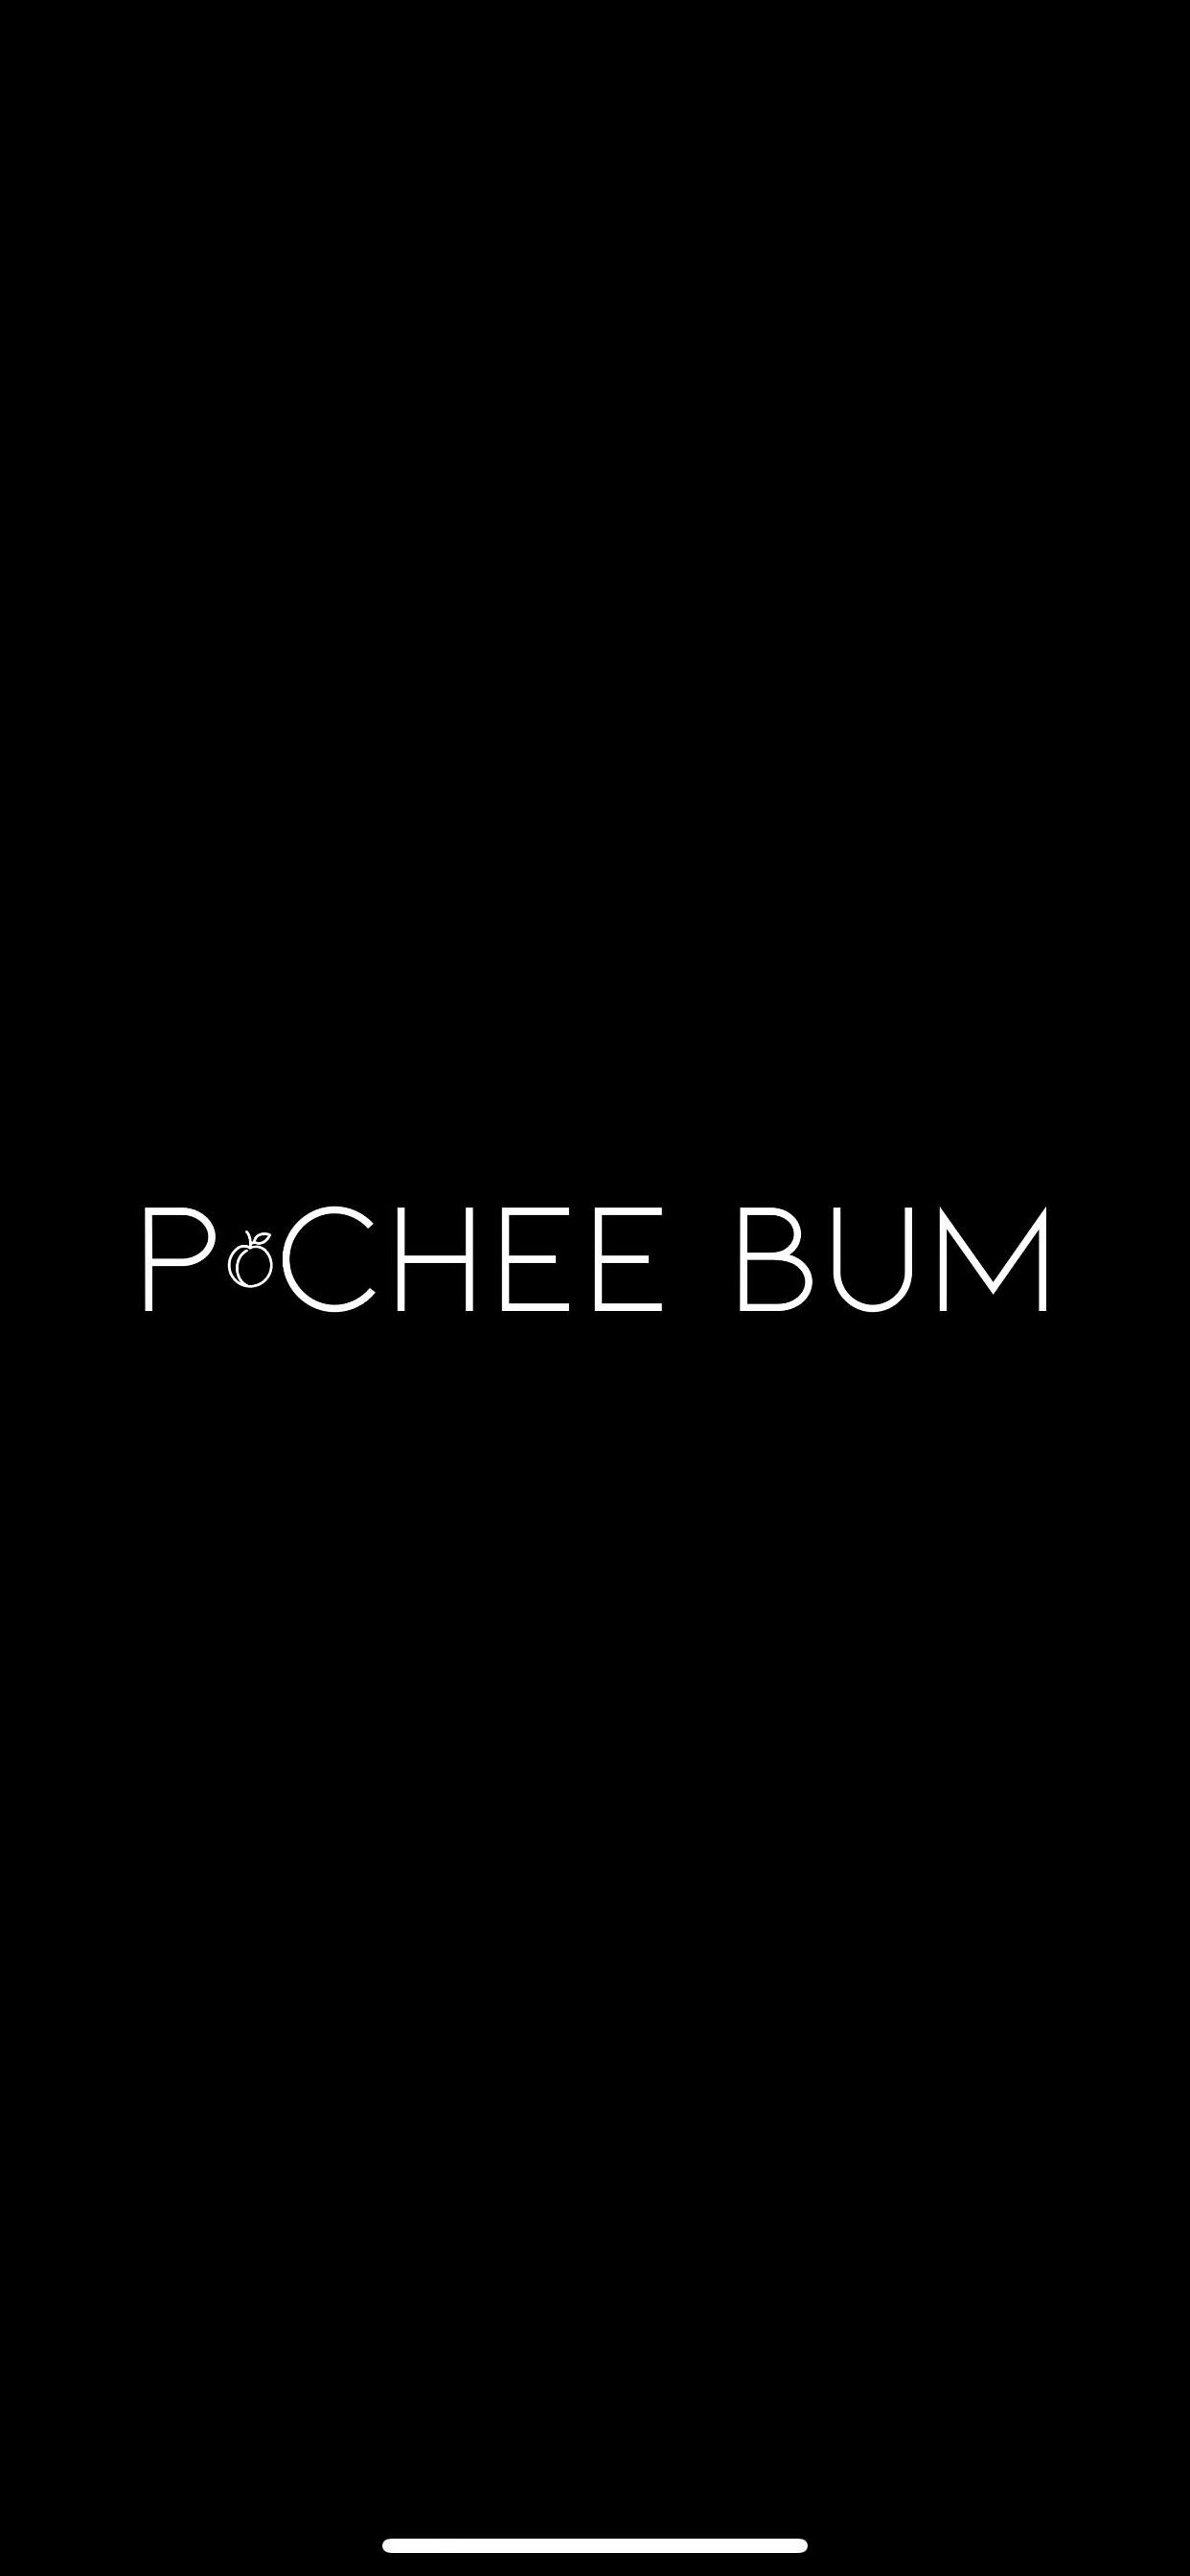 PCHEE BUM - Isabella Buscemi Trademark Registration